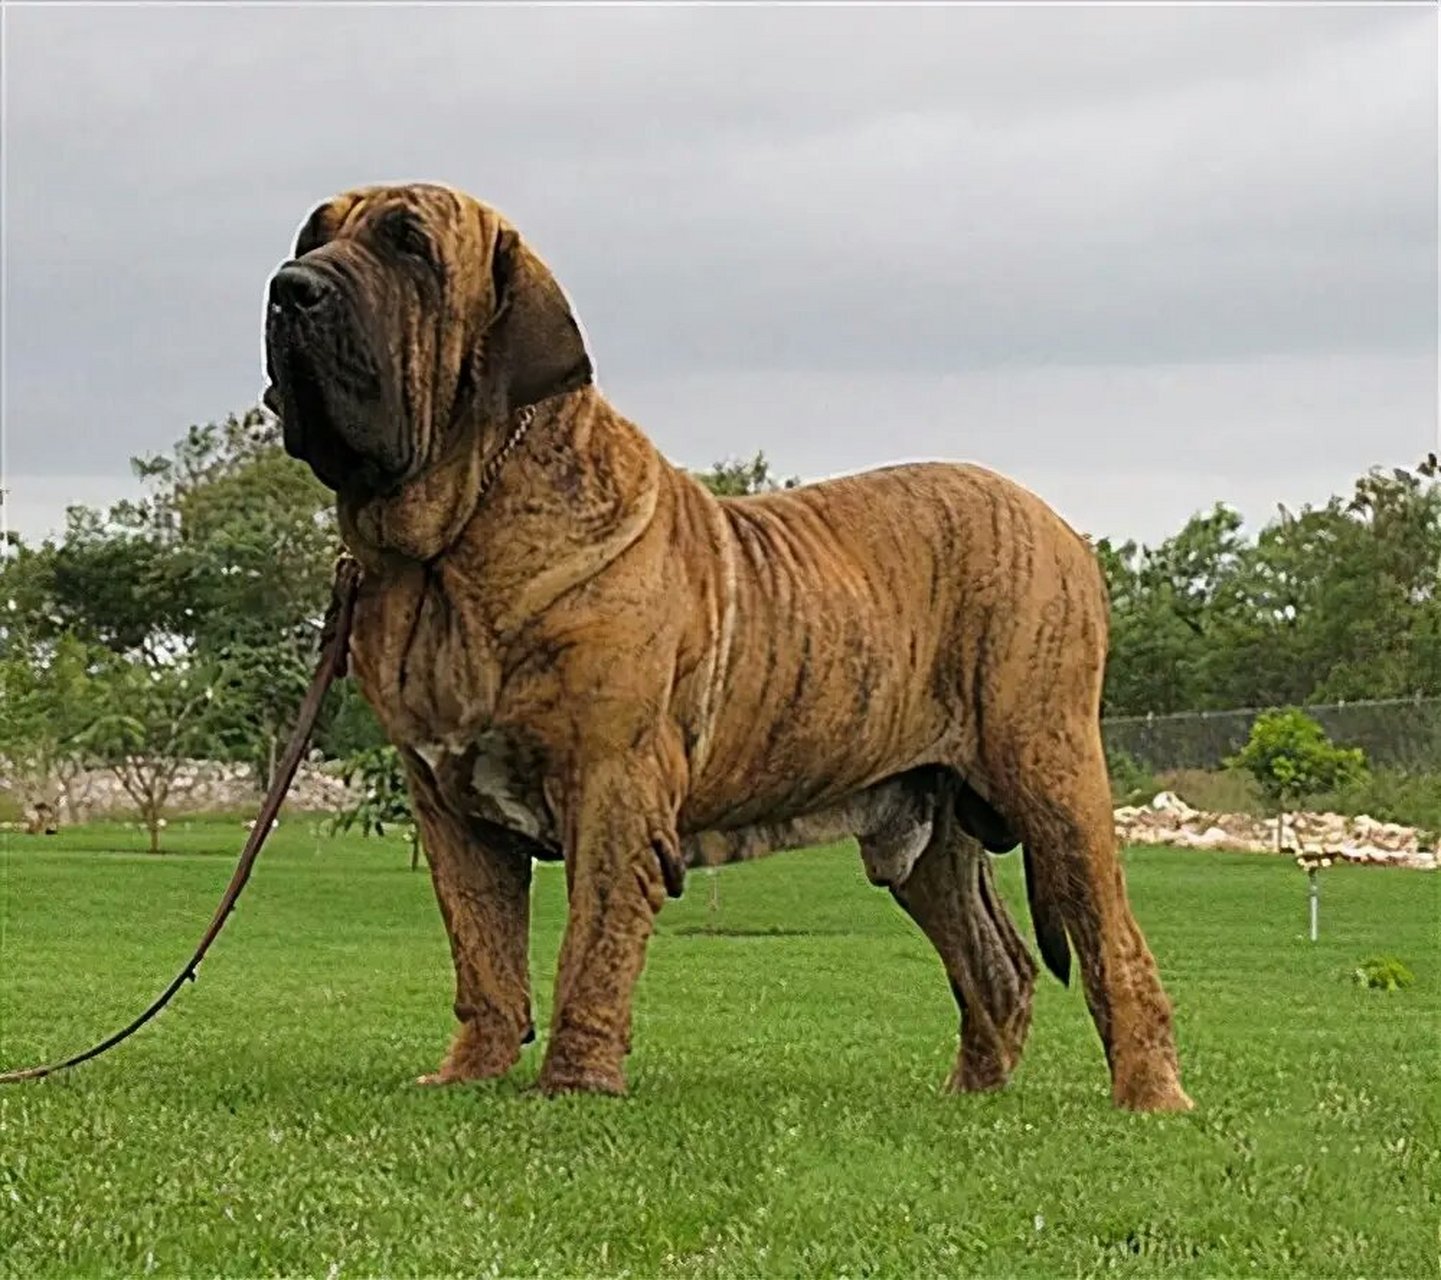 巴西獒犬,是一个凶猛的品种,有着让人害怕的面目,骨骼强壮,肌肉发达